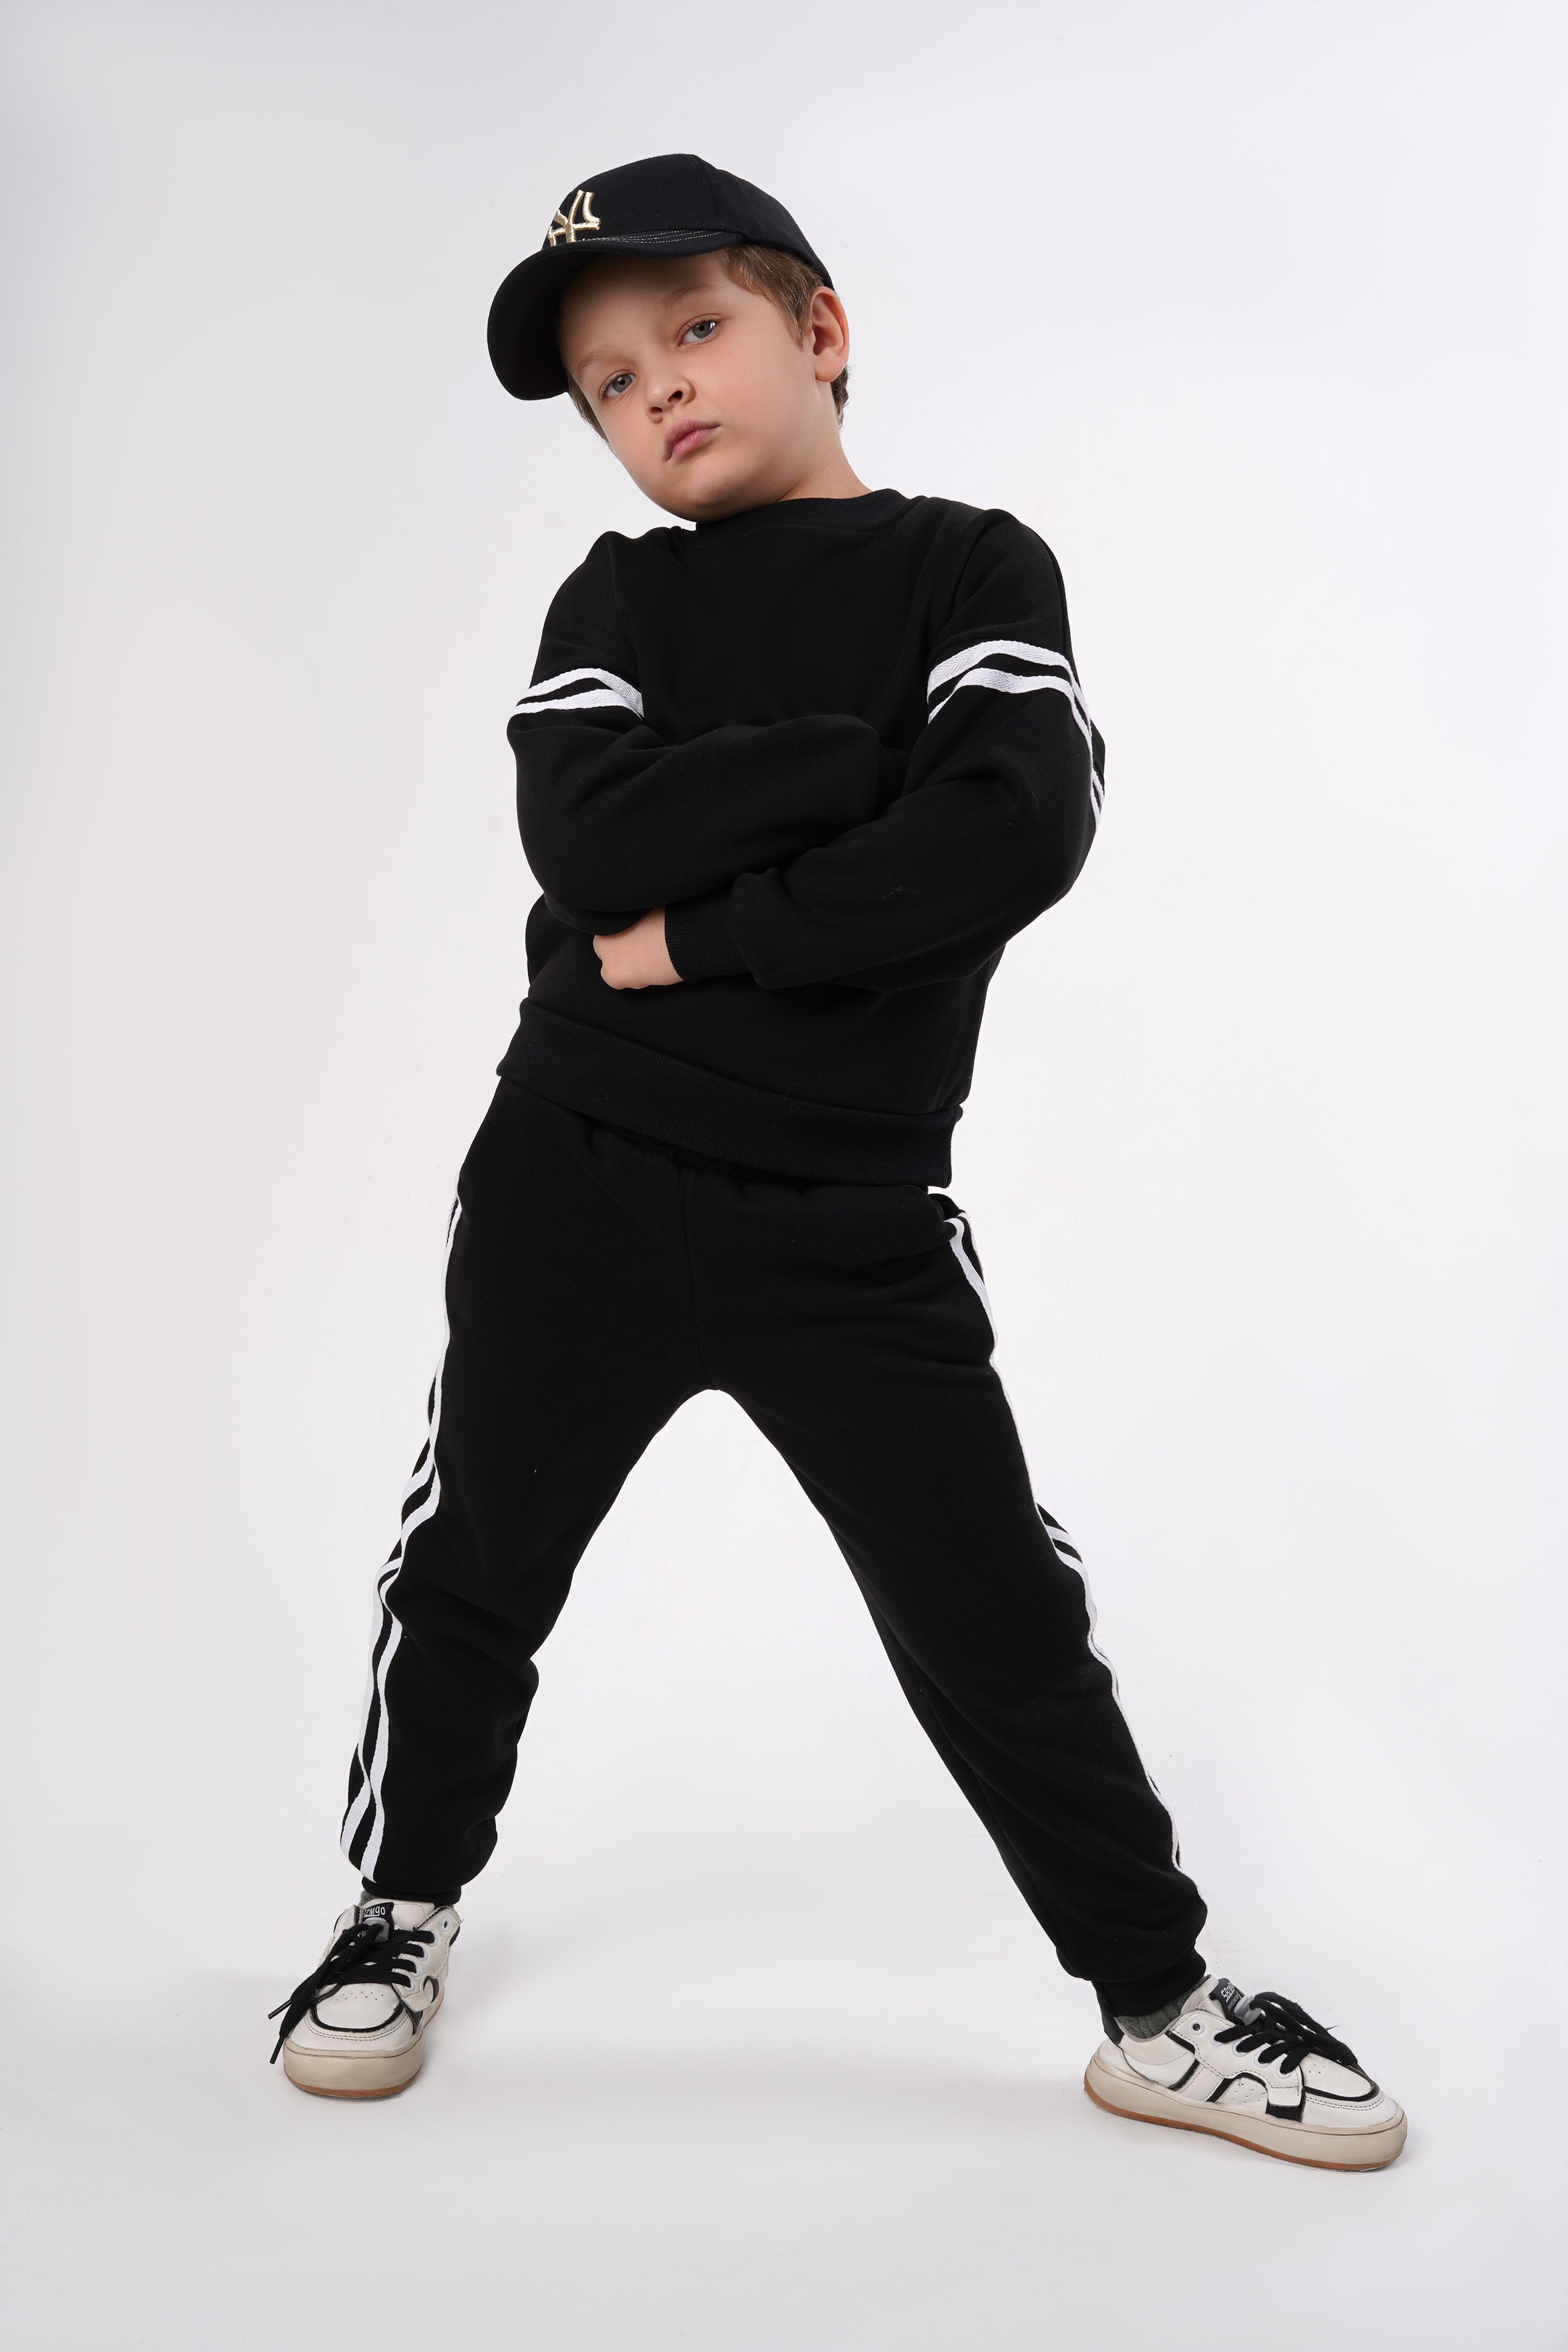 Спортивный костюм BabyDreams KS10/черный костюм для малыша - фото 1